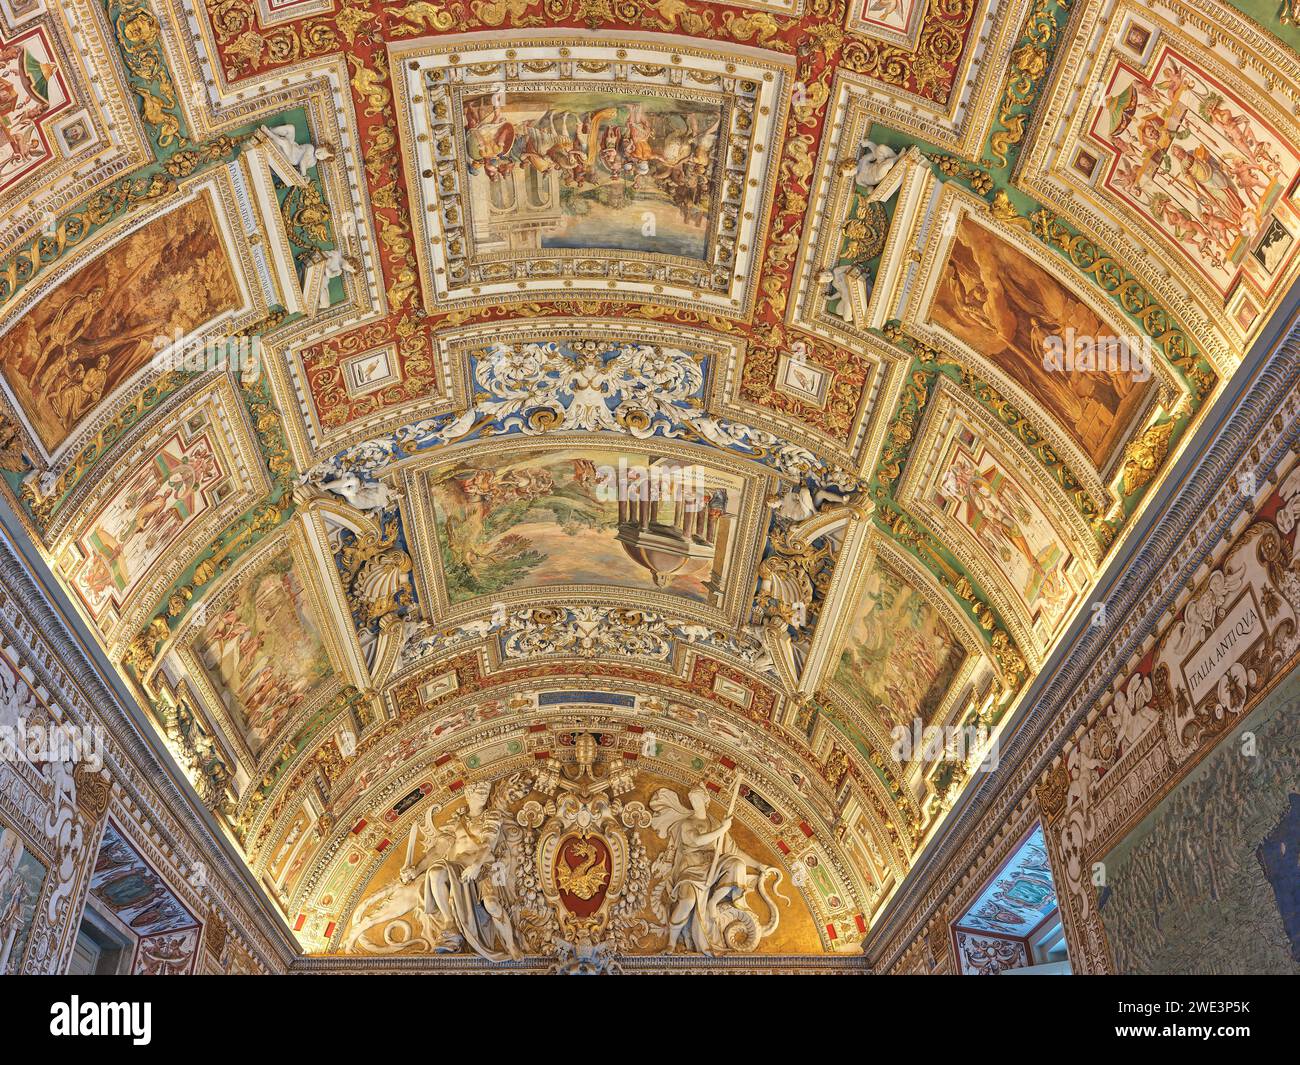 Dipinti e decorazioni sul soffitto nella galleria di mappe geografiche, Musei Vaticani, Roma, Italia. Foto Stock